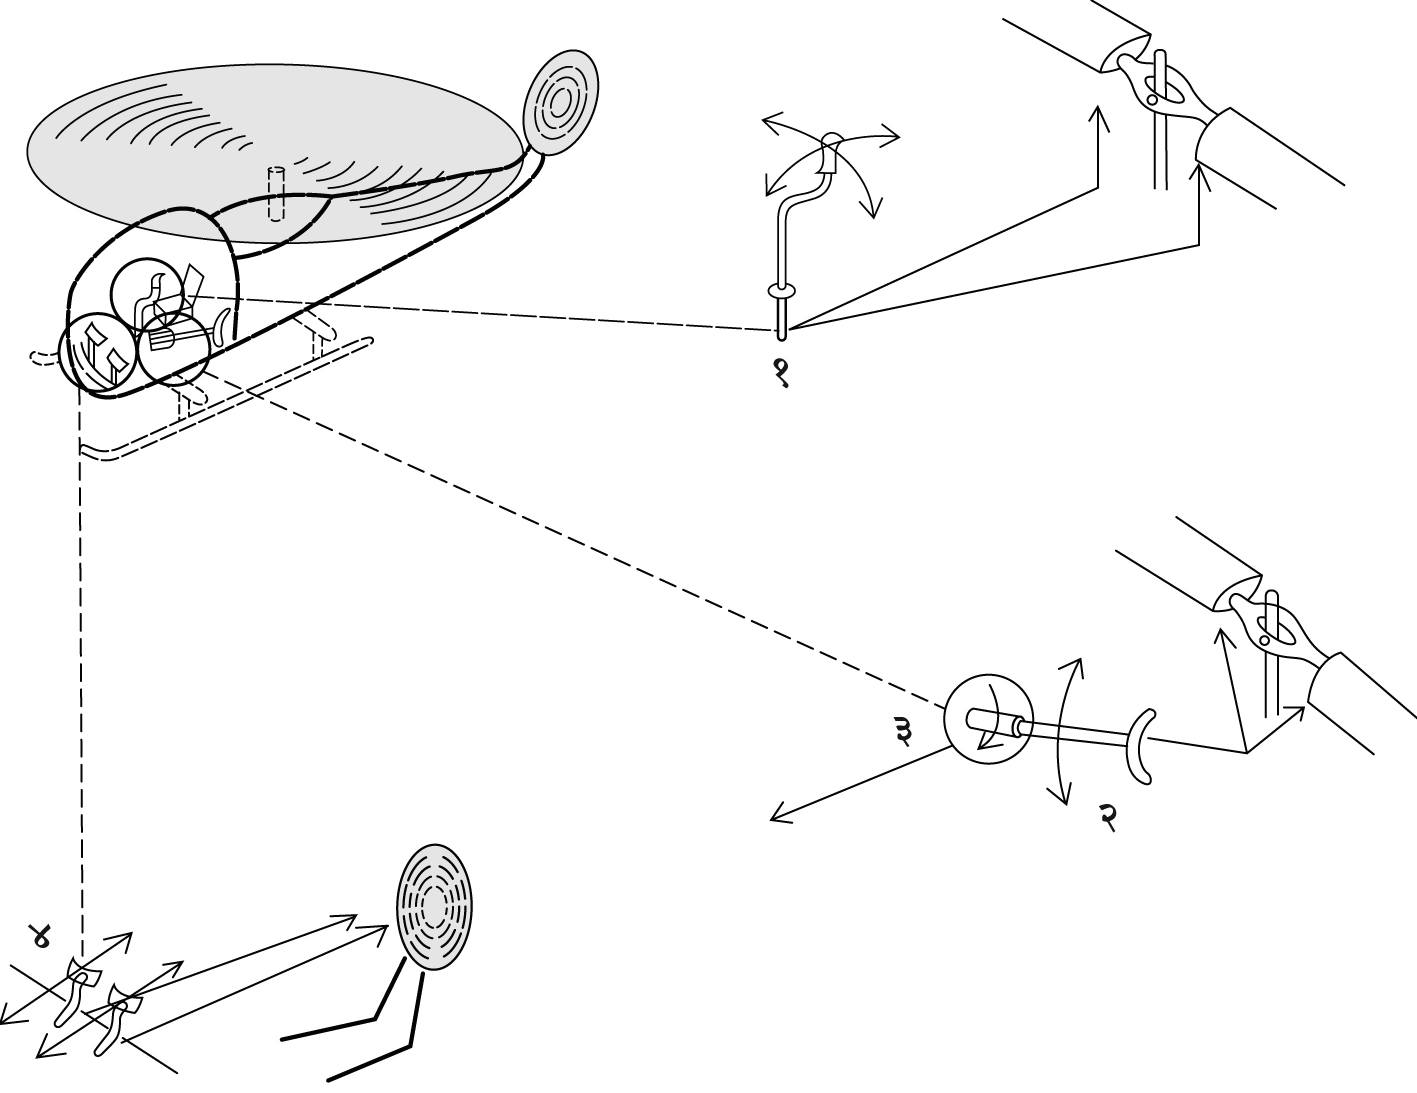 आ. ३. हेलिकॉप्टर उड्डाण नियंत्रणाची कार्ये : (१) उच्चालक घूर्णक पात्यांचे ज्या-वक्रीय अंतराल बदलणारा चक्रीय अंतराल नियंत्रक, (२) उच्चालक घूर्णक पात्यांचे अंतराल एकाच वेळी बदलून उभ्या दिशेतील उड्डाणाचे नियंत्रण करणारी समग्र अंतराल तरफ, (३) वेगावर नियंत्रण ठेवणारी नियामक झडप, (४) पुच्छ घूर्णक पात्यांवरील अंतराल बदलणारे सुकाणू पायटे. 